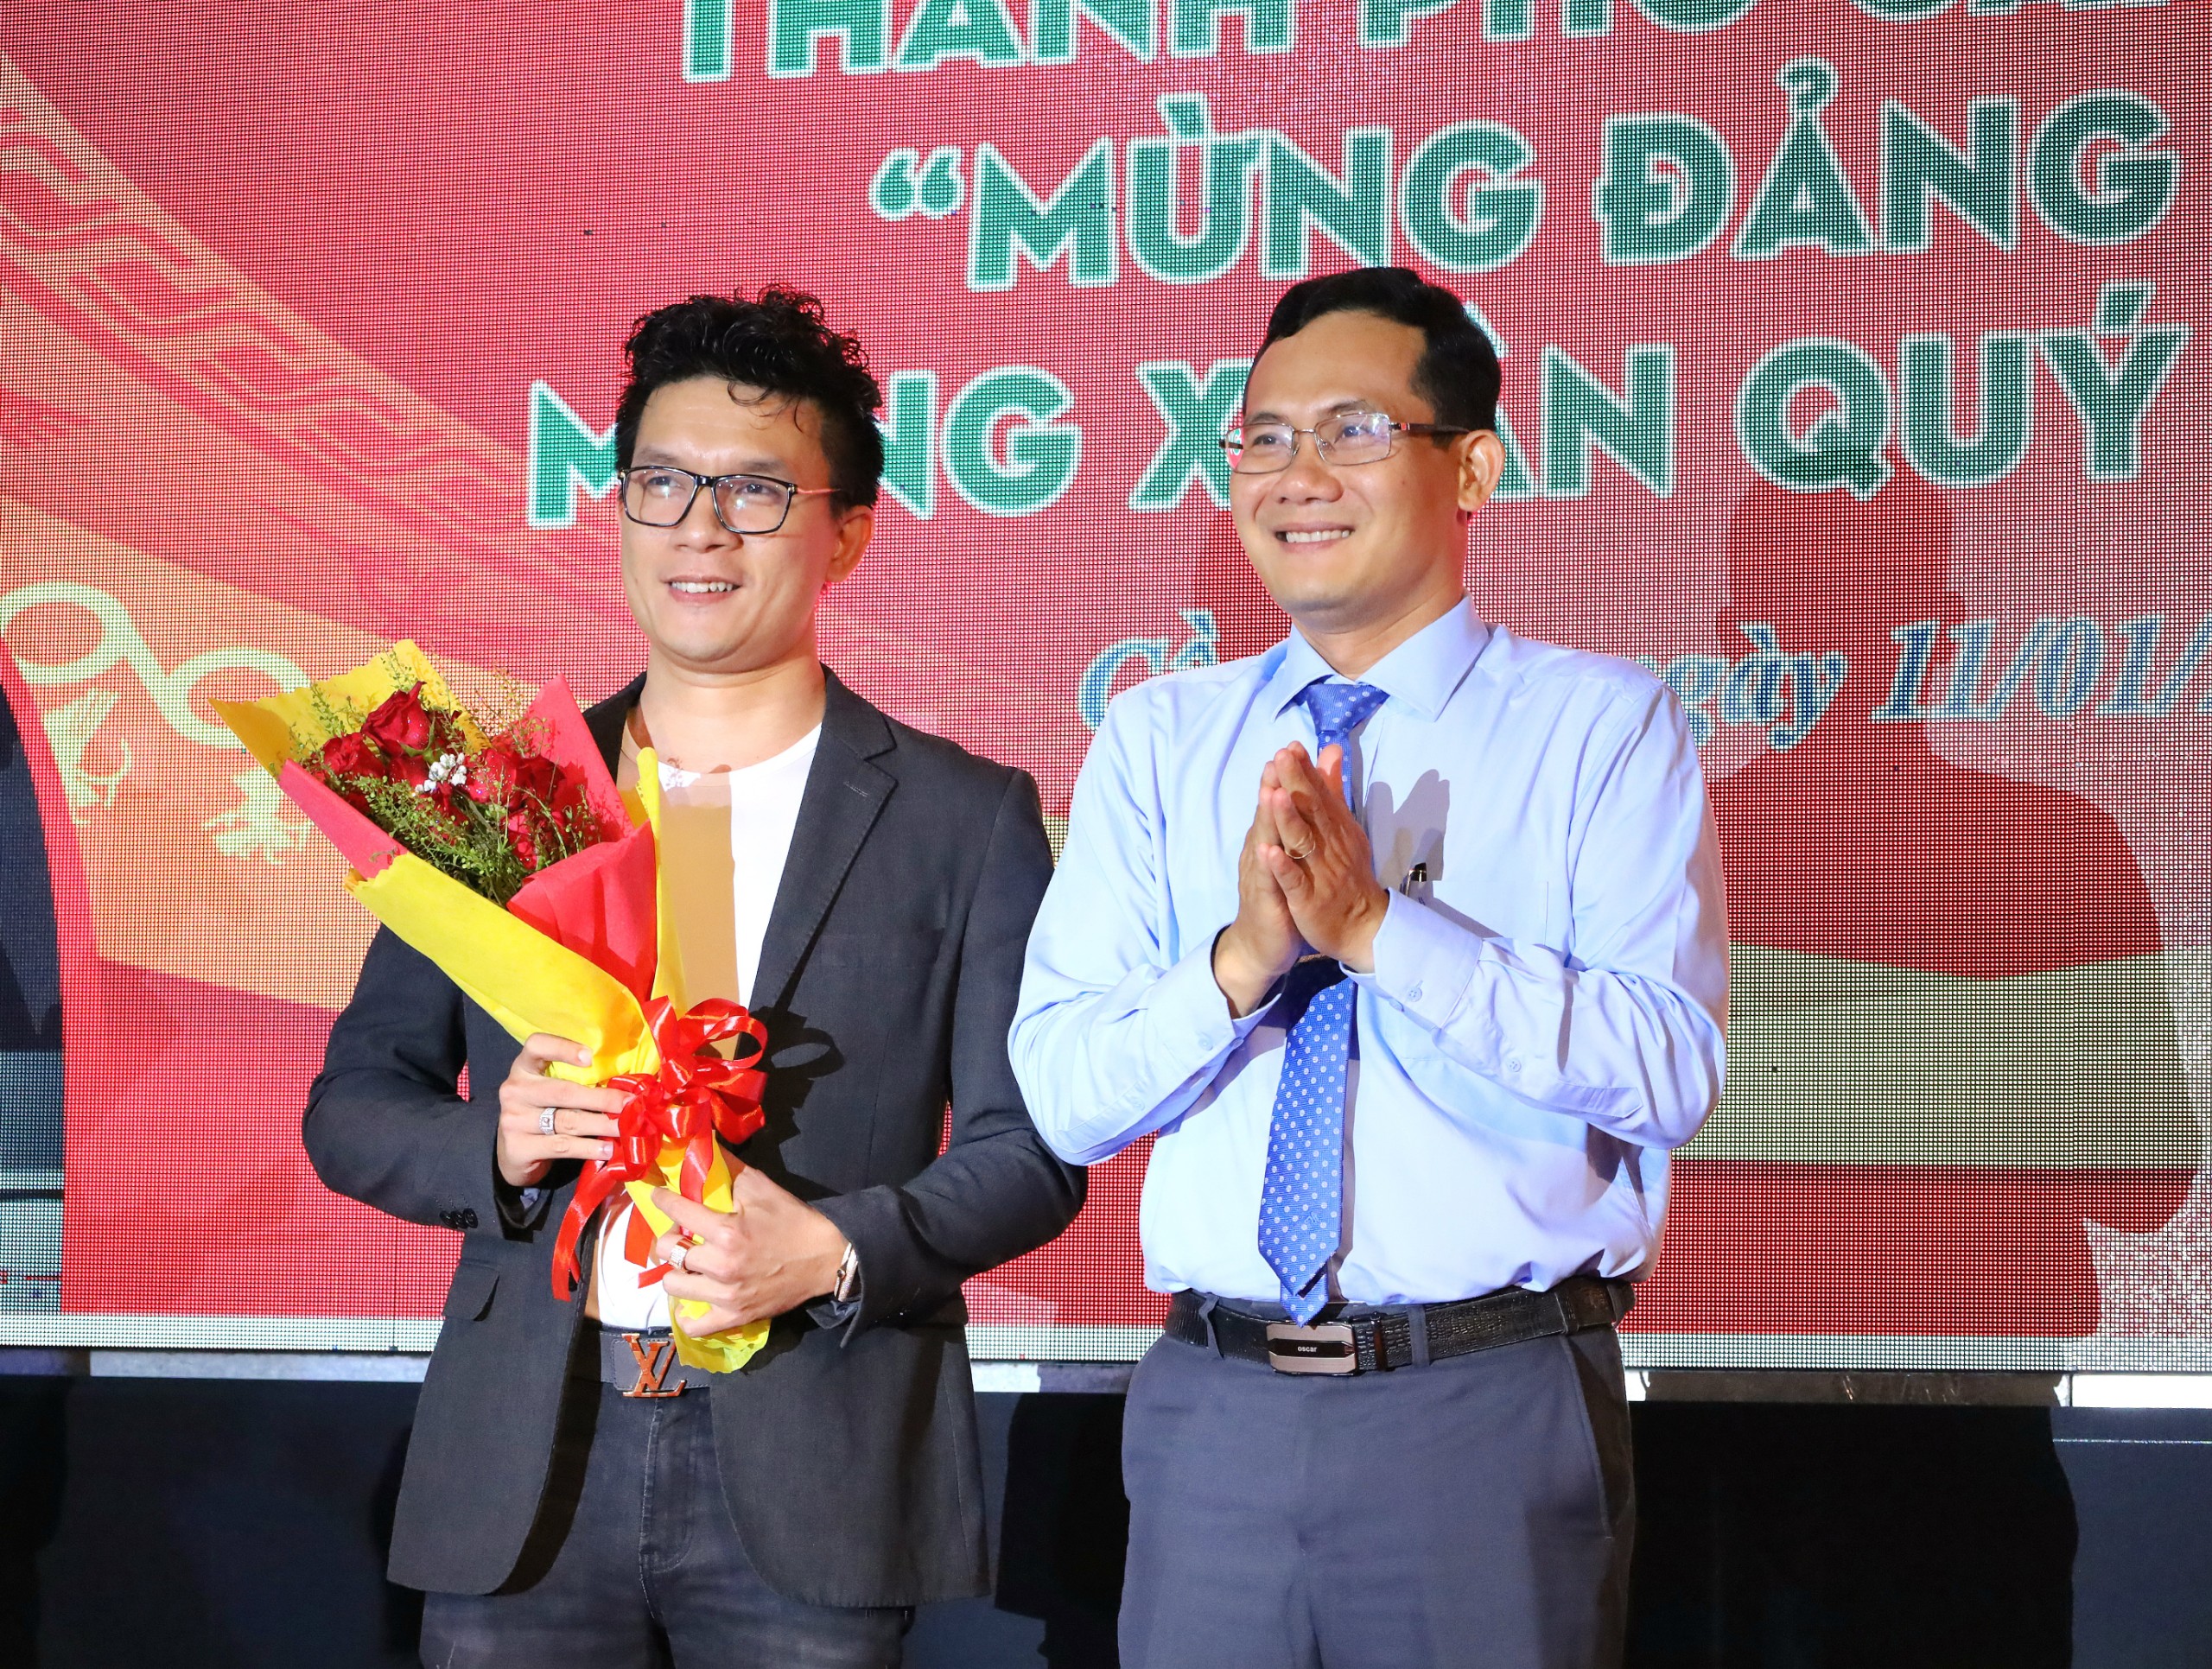 Ông Nguyễn Minh Tuấn - Giám đốc Sở Văn hóa, Thể thao và Du lịch TP. Cần Thơ tặng hoa cho nhà tài trợ.